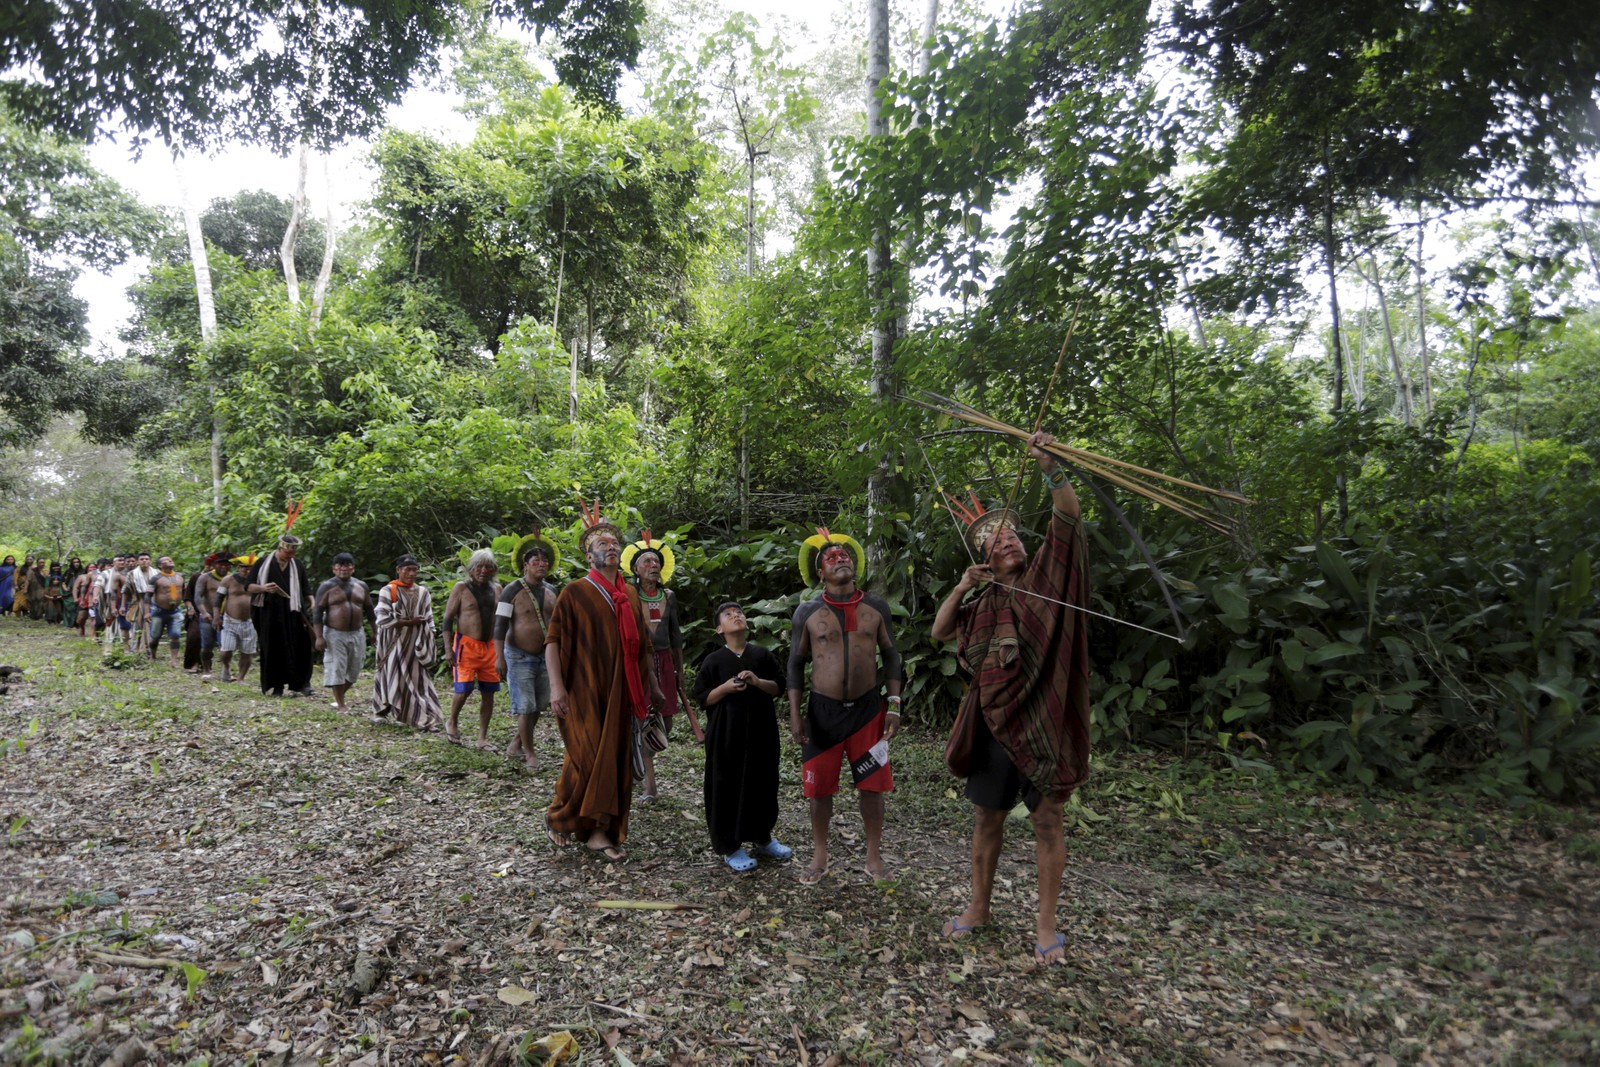 Indígenas kayapós observam o líder espiritual e guerreiro ashaninka, Moisés Pyãko, que prepara seu arco e flecha em busca de caça na floresta  — Foto: Domingos Peixoto / Agência O Globo